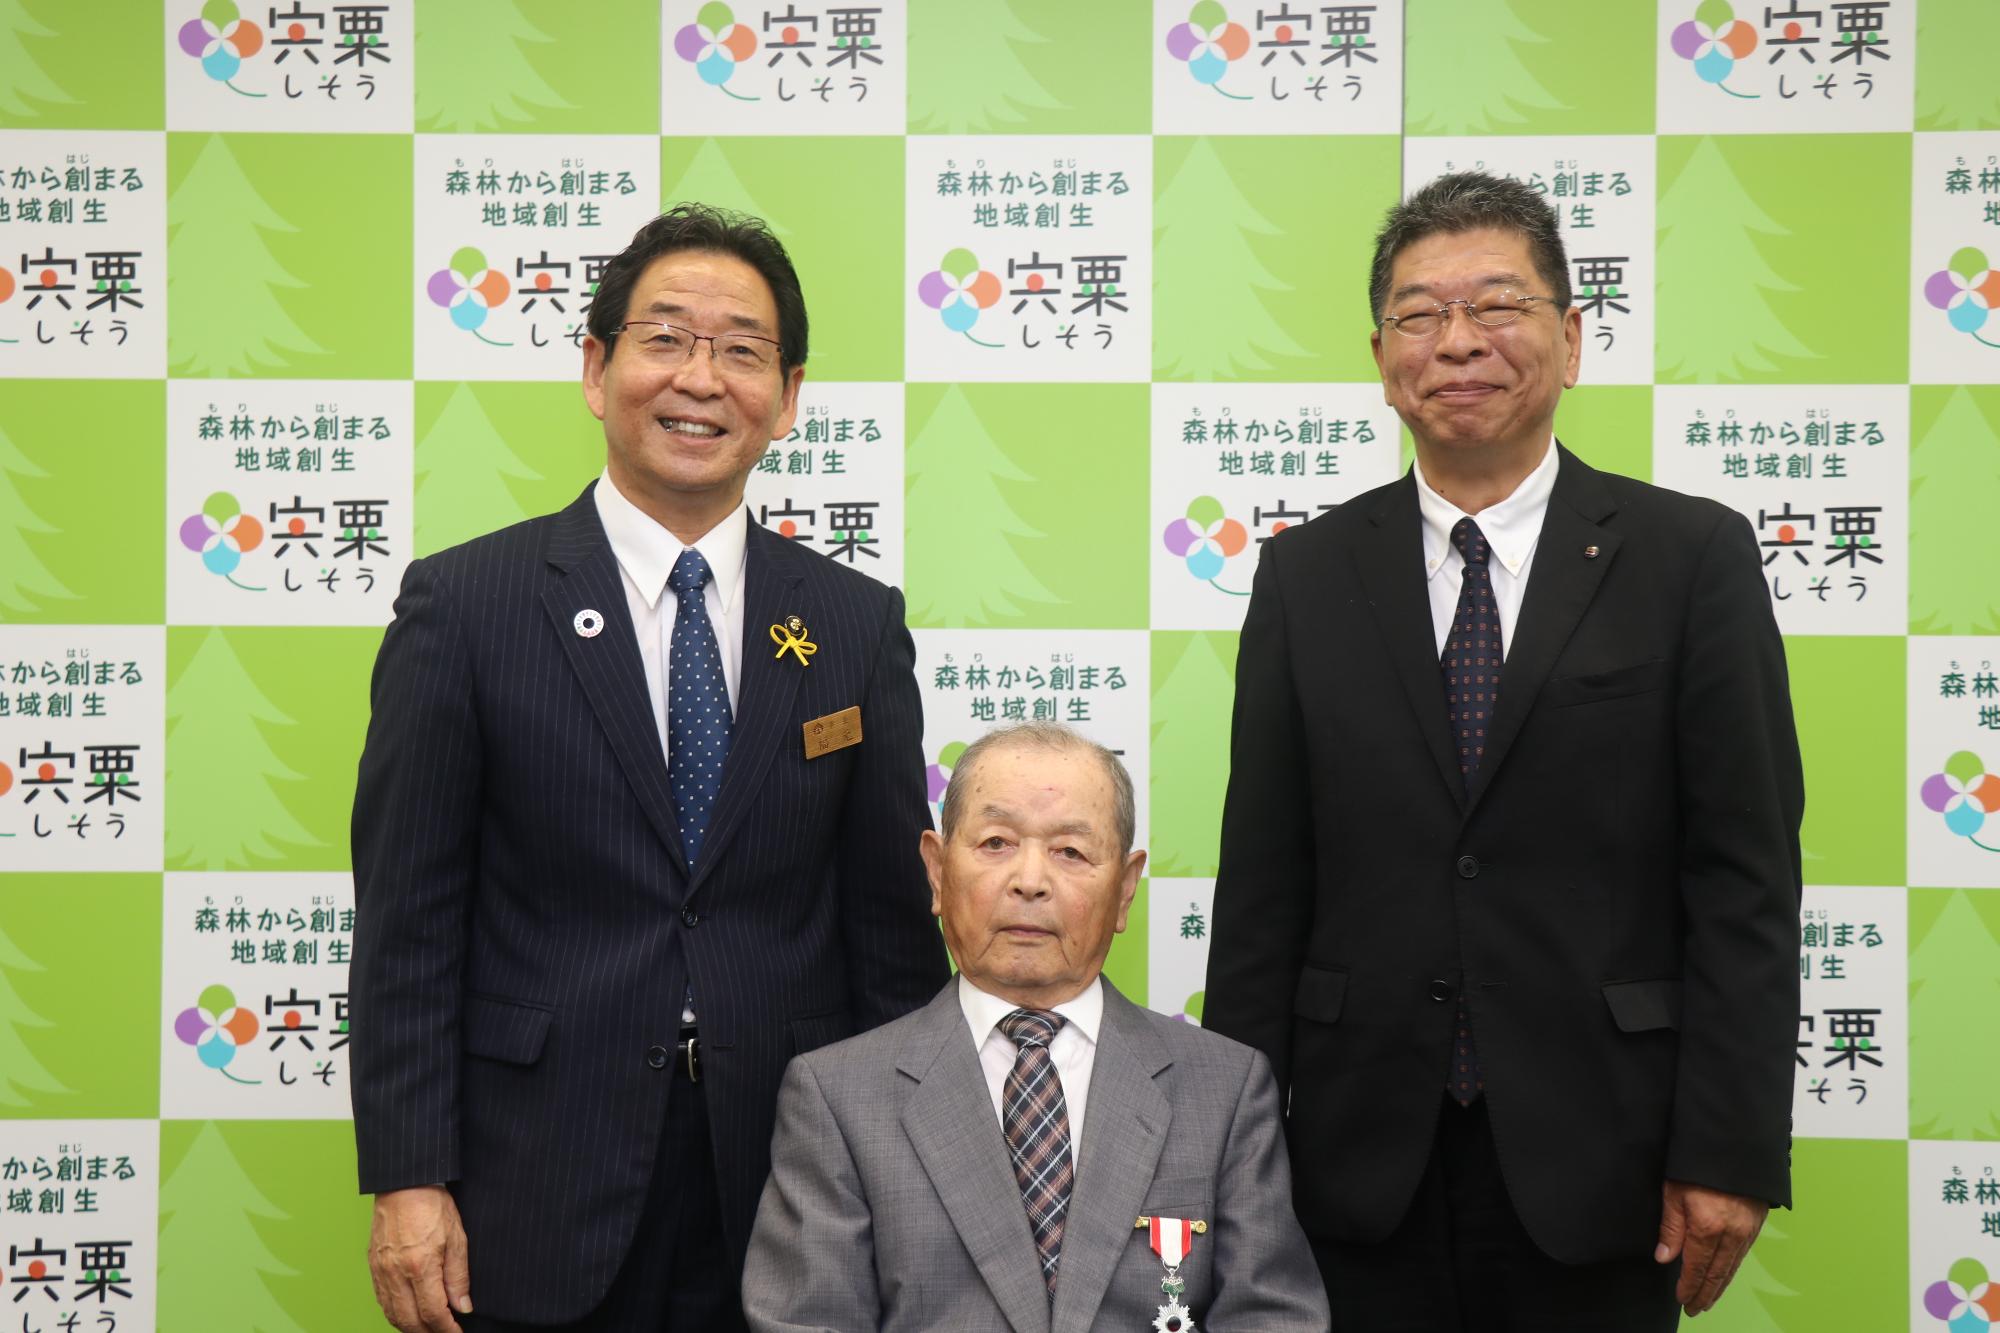 高齢者叙勲伝達式、左は福元市長、真ん中は長谷川進さん、右は西播磨県民局長が並んでいる写真